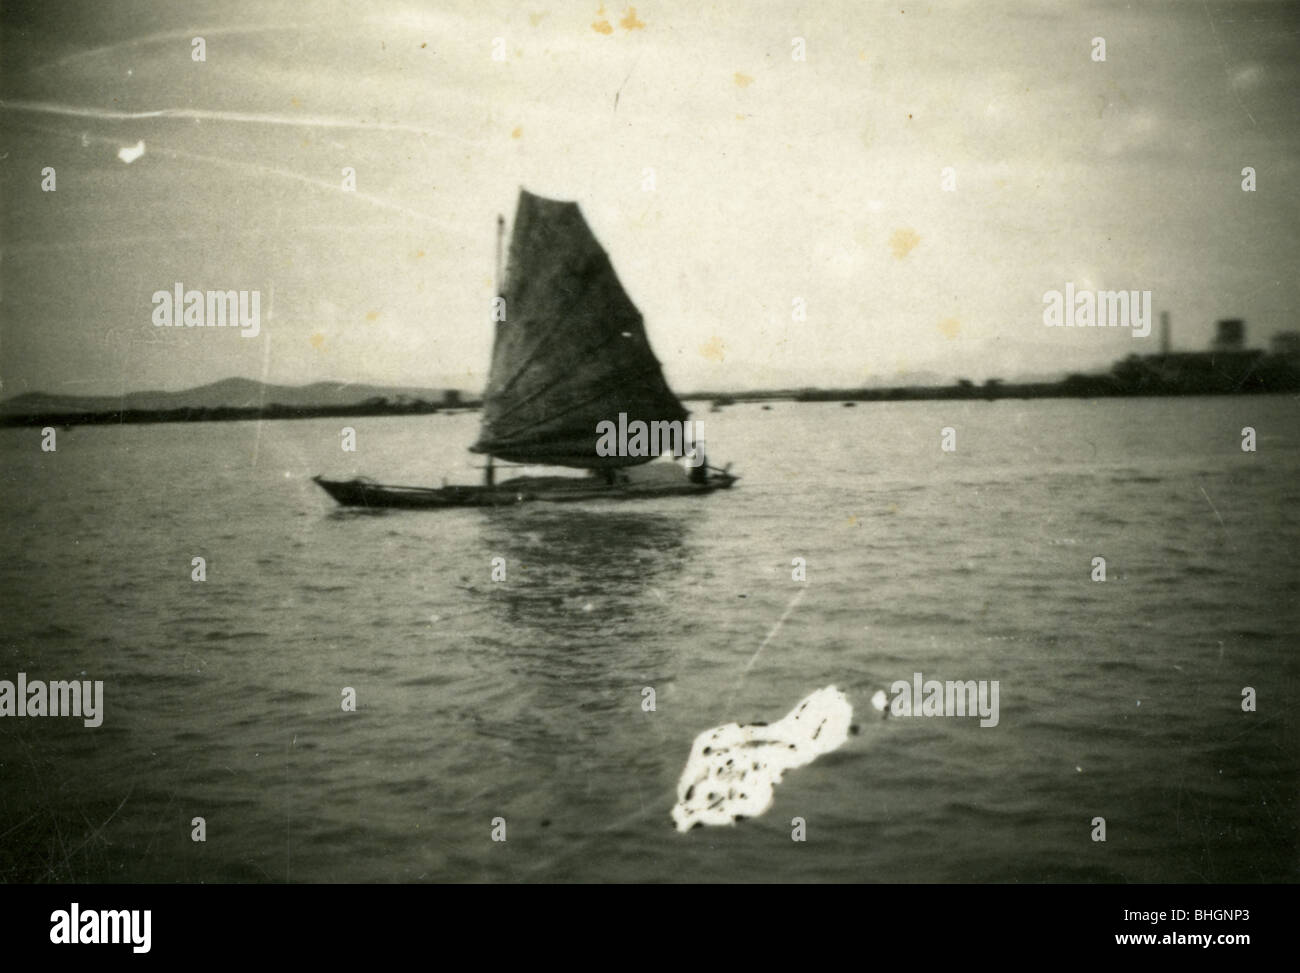 Un bateau vietnamien utilise une voile pour traverser une étendue d'eau. horizontal noir et blanc voile Voile waterway Banque D'Images